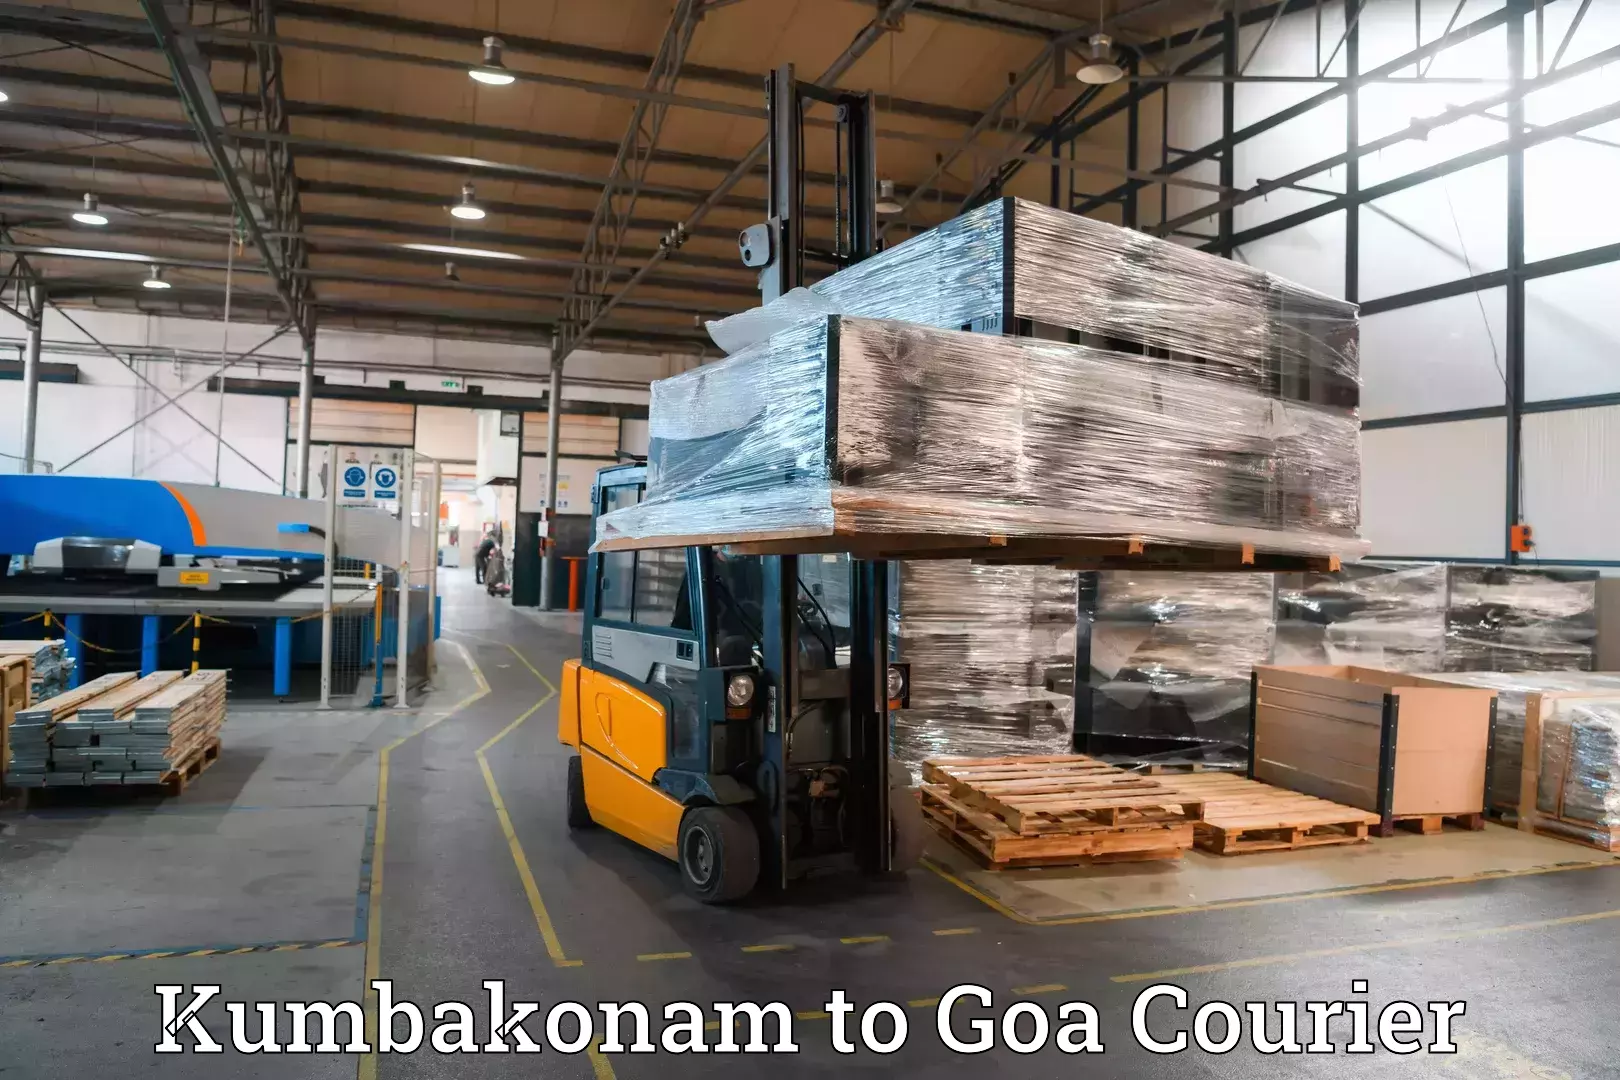 Luggage transport guidelines Kumbakonam to South Goa